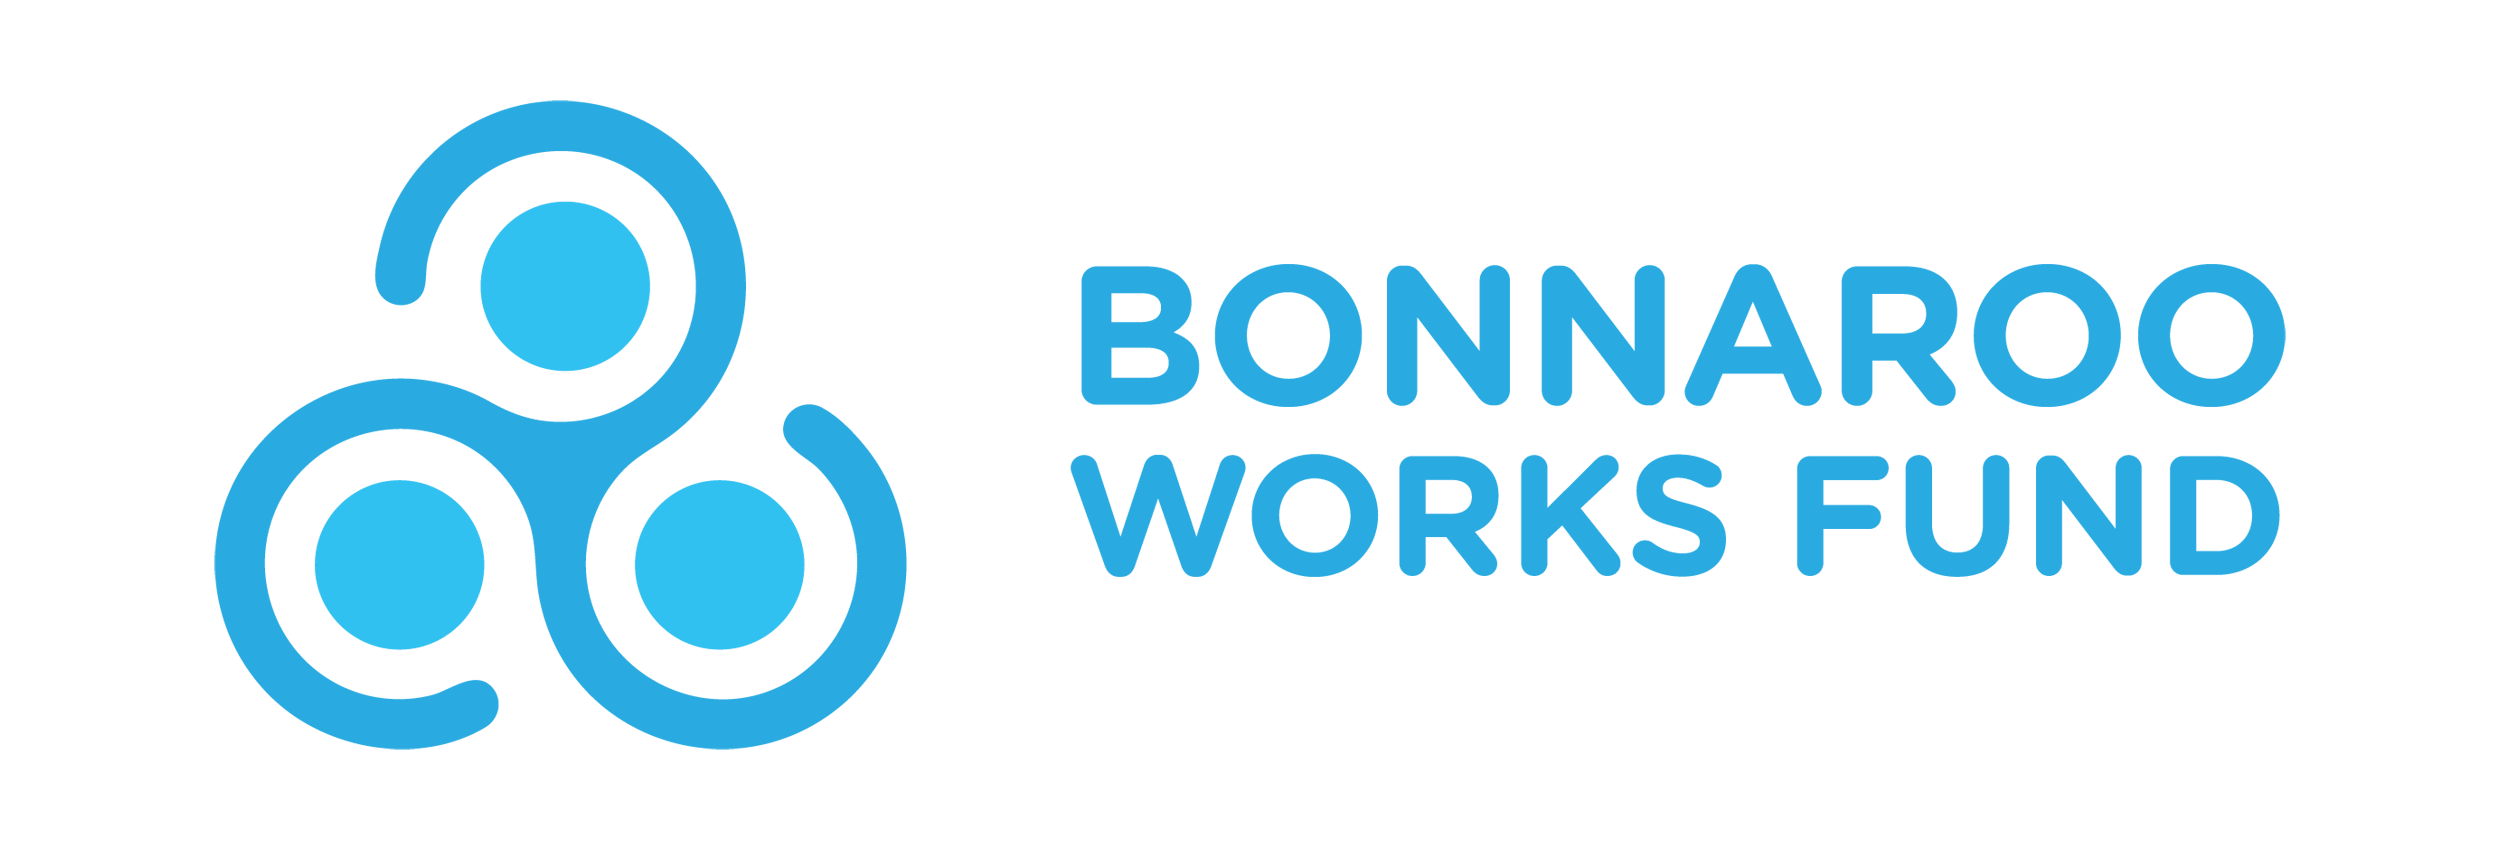 Bonnaroo Works Fund logo